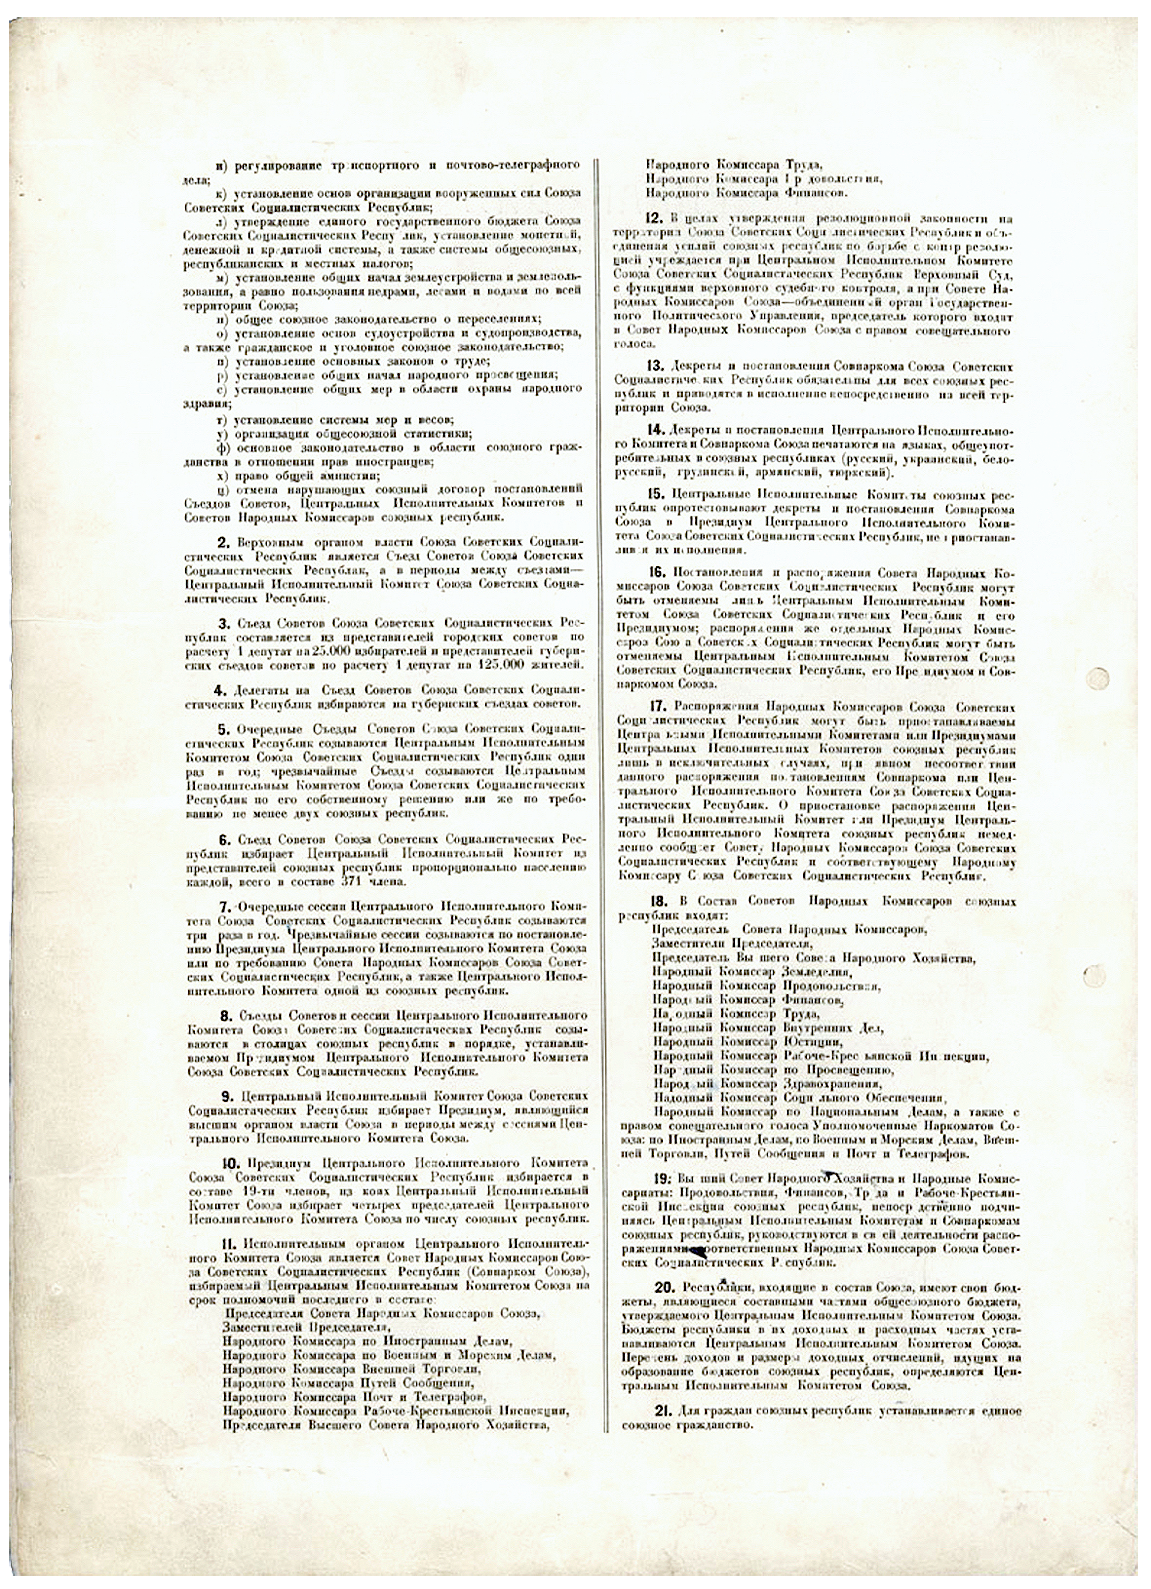 dogovor-ob-obrazovanii-soyuza-sovetskih-socialisticheskih-respublik-1922-2.png